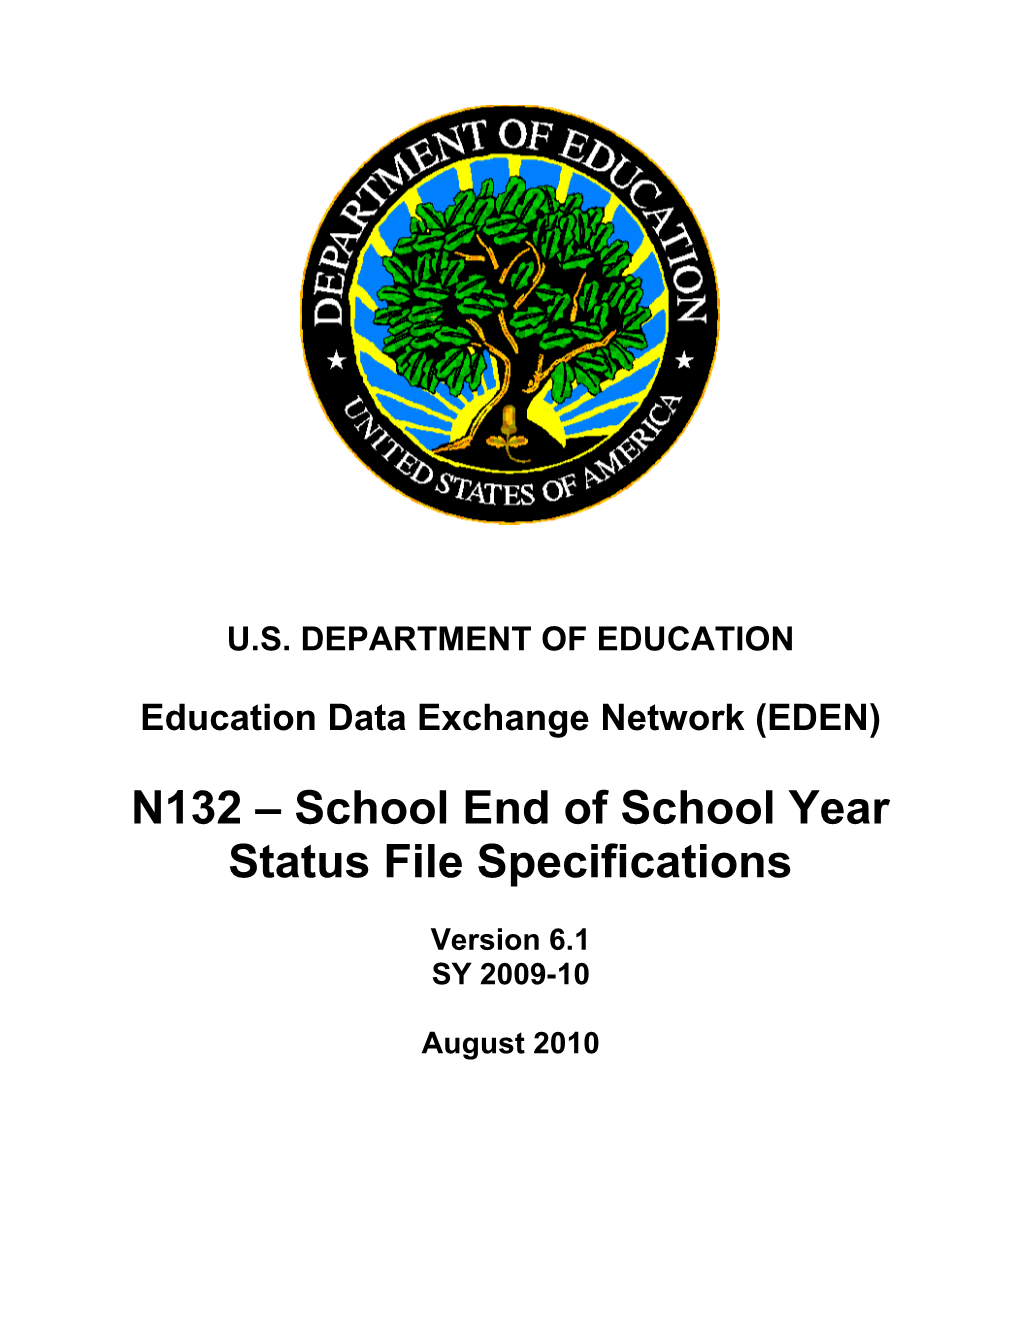 N132 School End of School Year Status File Specifications (MS Word)